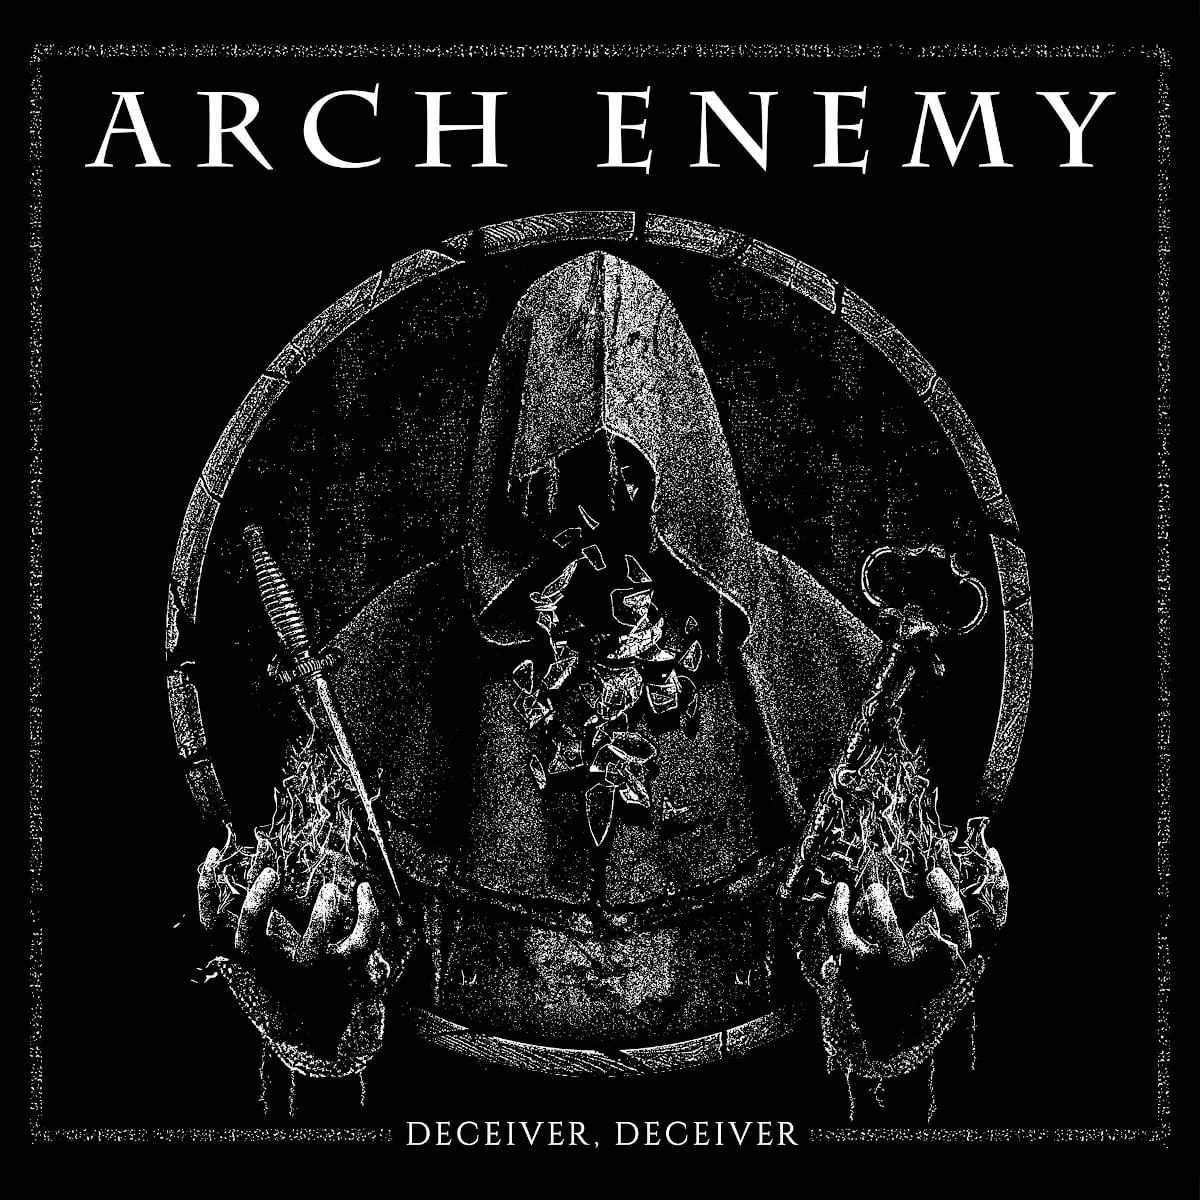 NY VIDEO: Arch Enemy - Deceiver, Deceiver 1